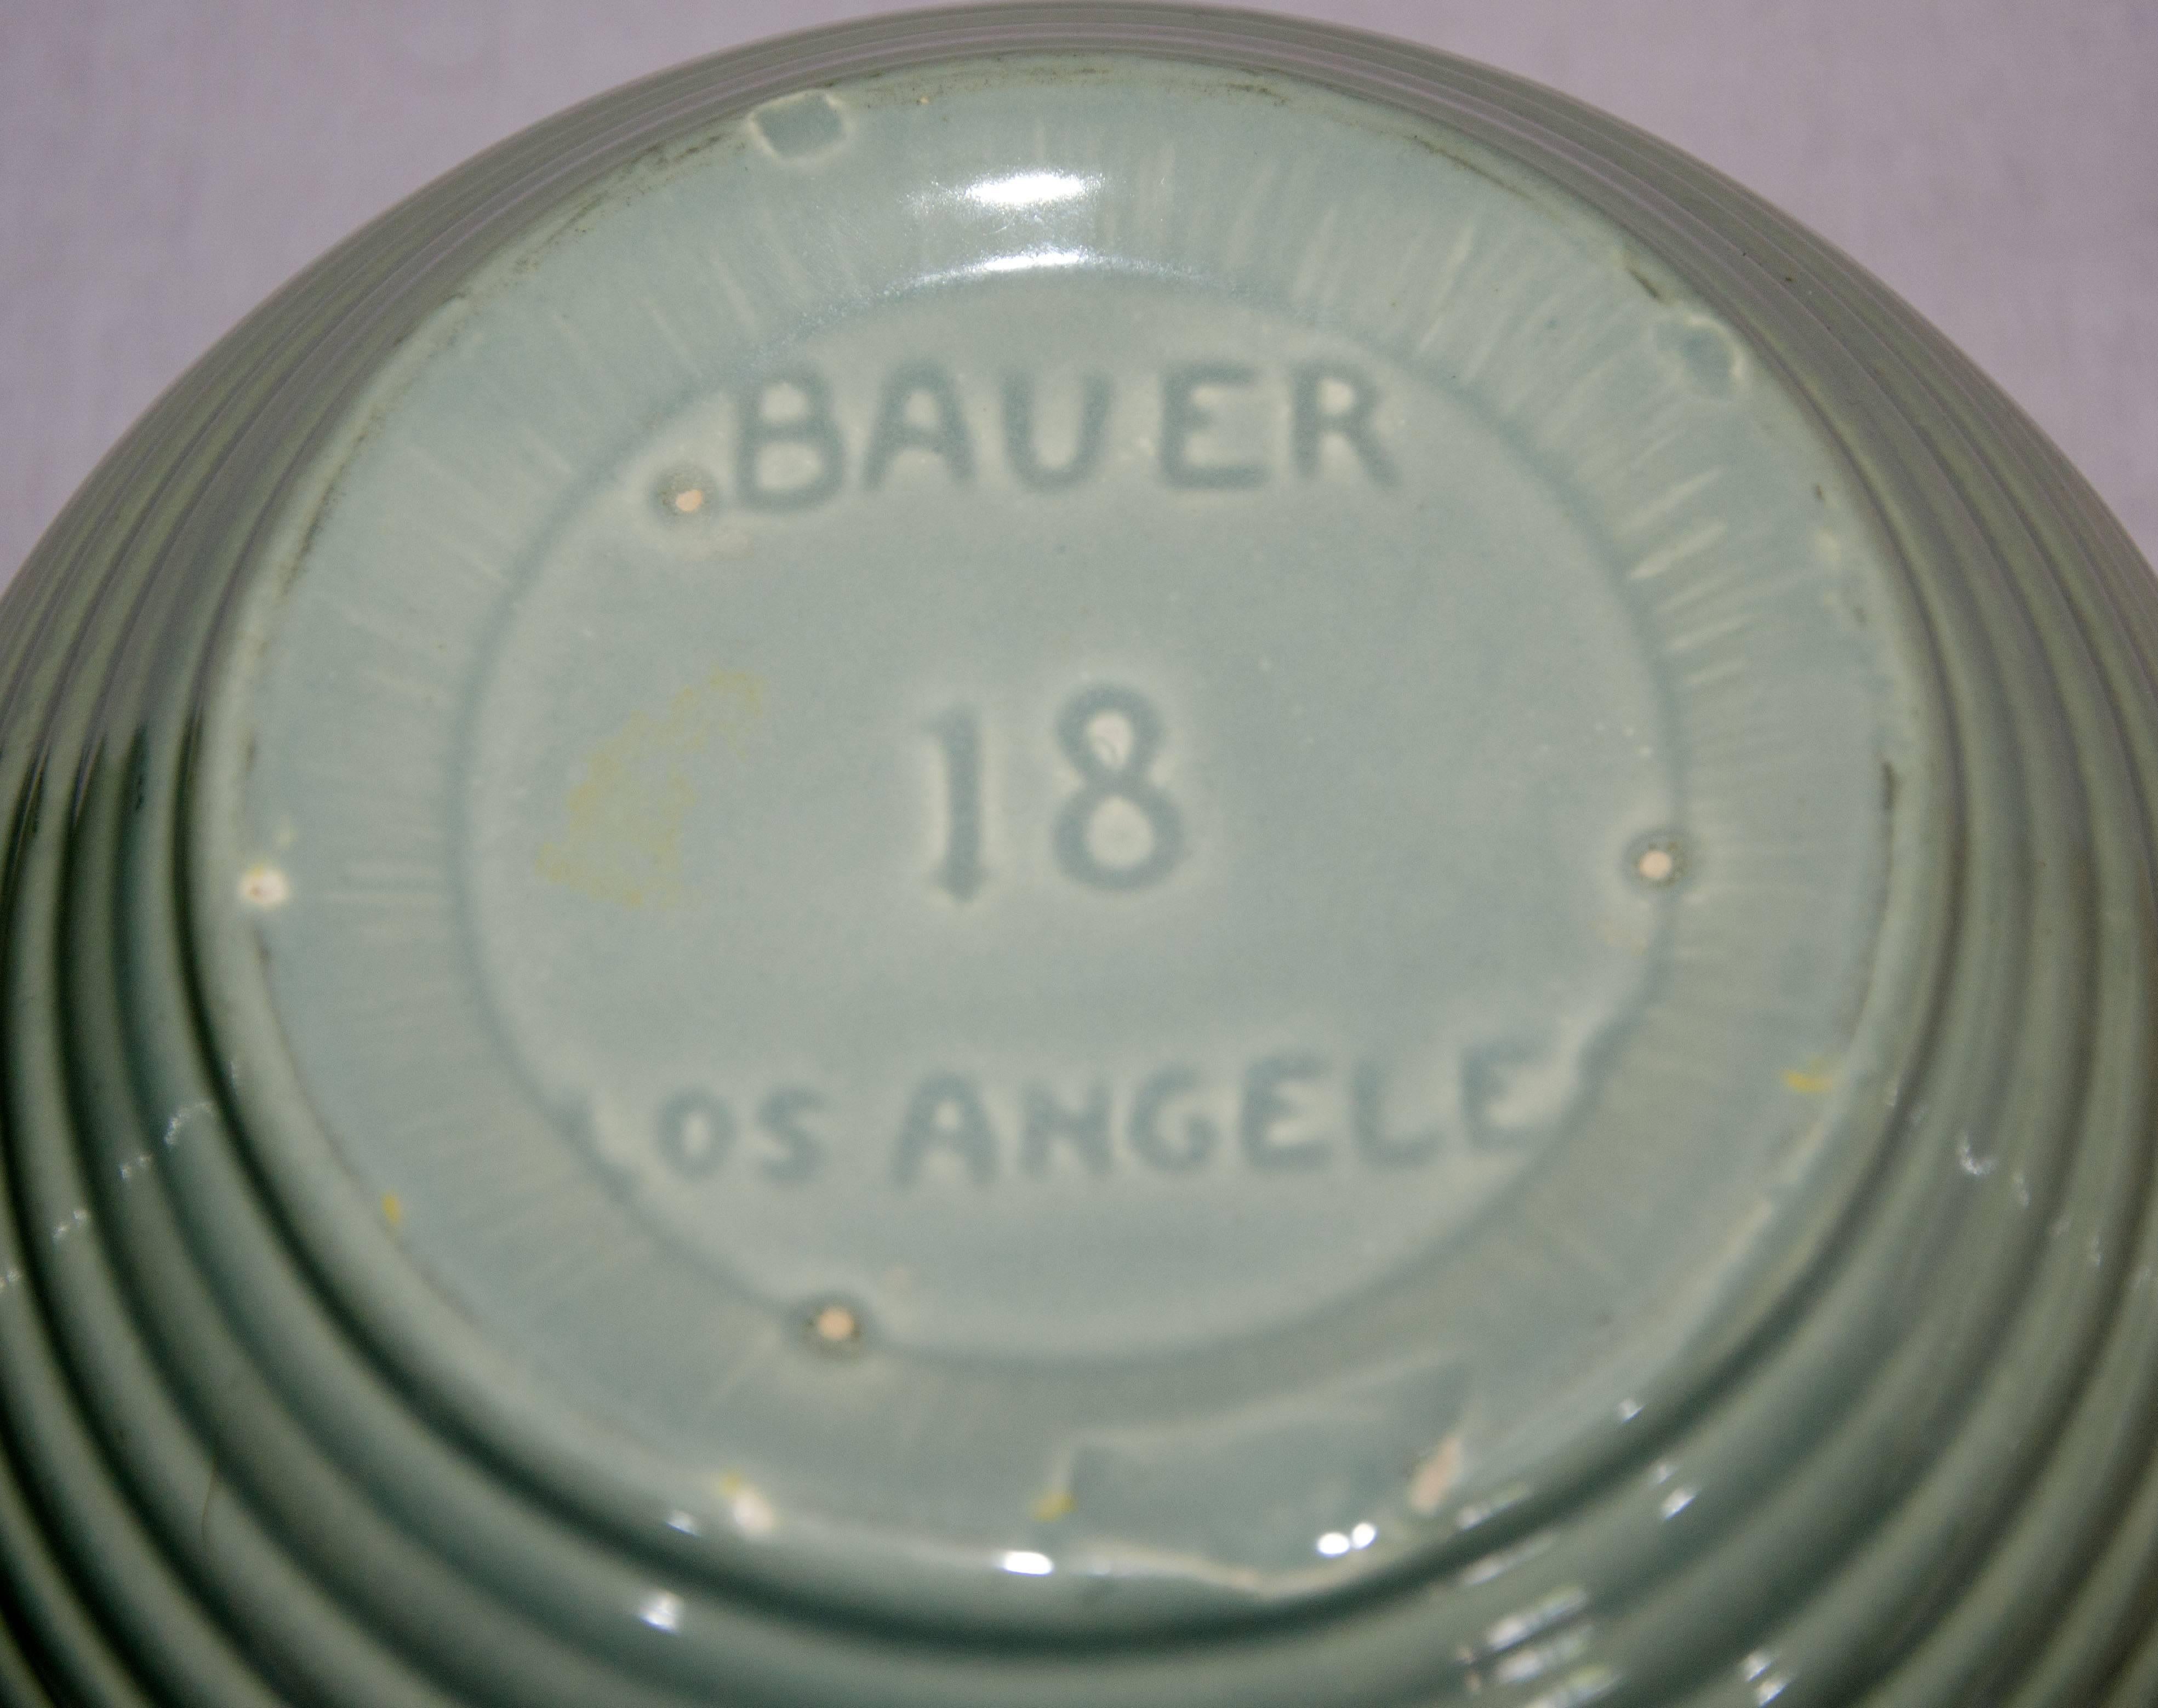 bauer mixing bowl set